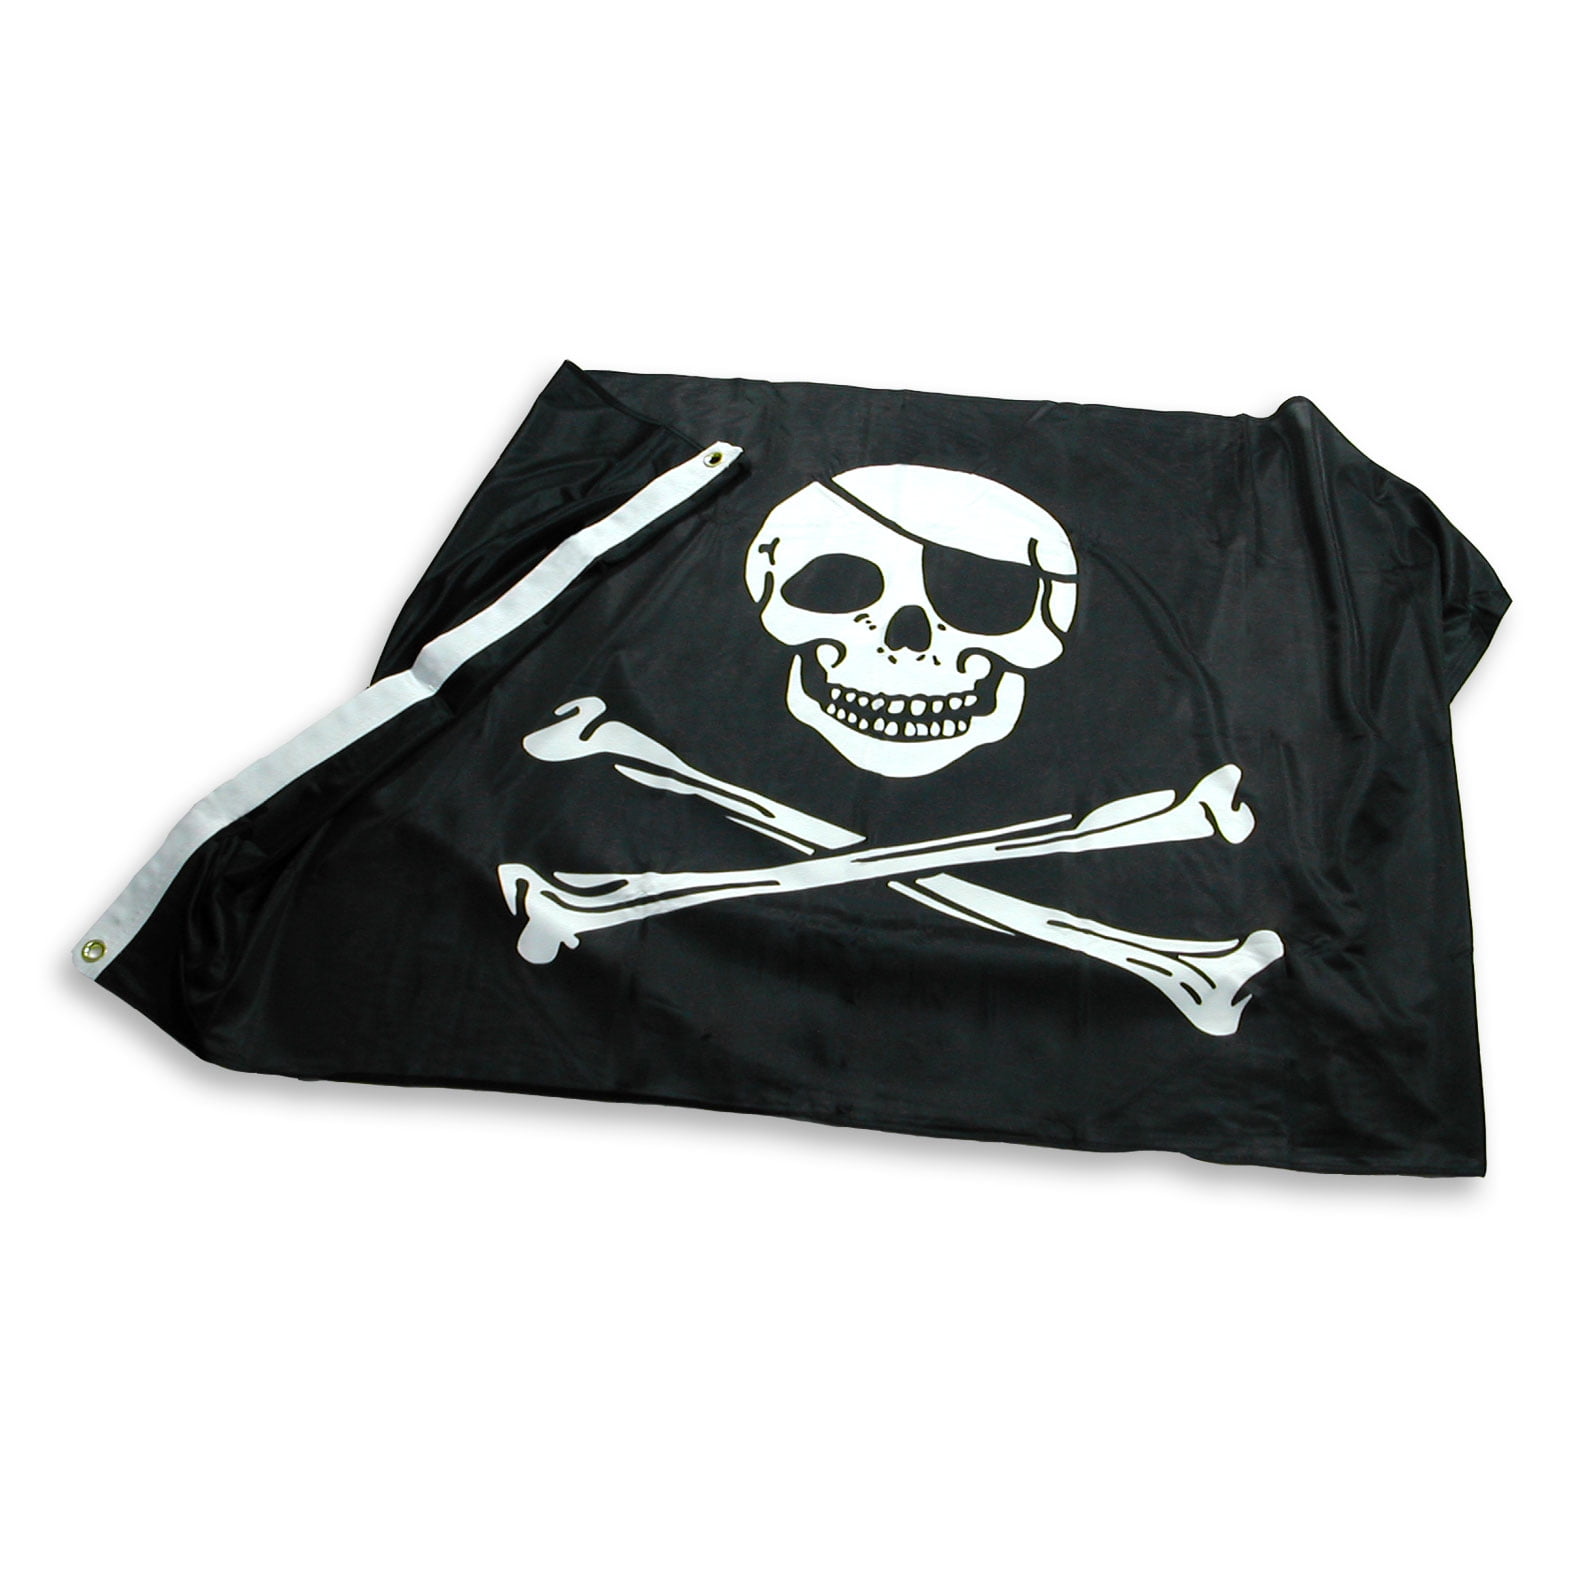 5ft x 3ft Pirate Flag Jolly Roger Skull and Crossbones 